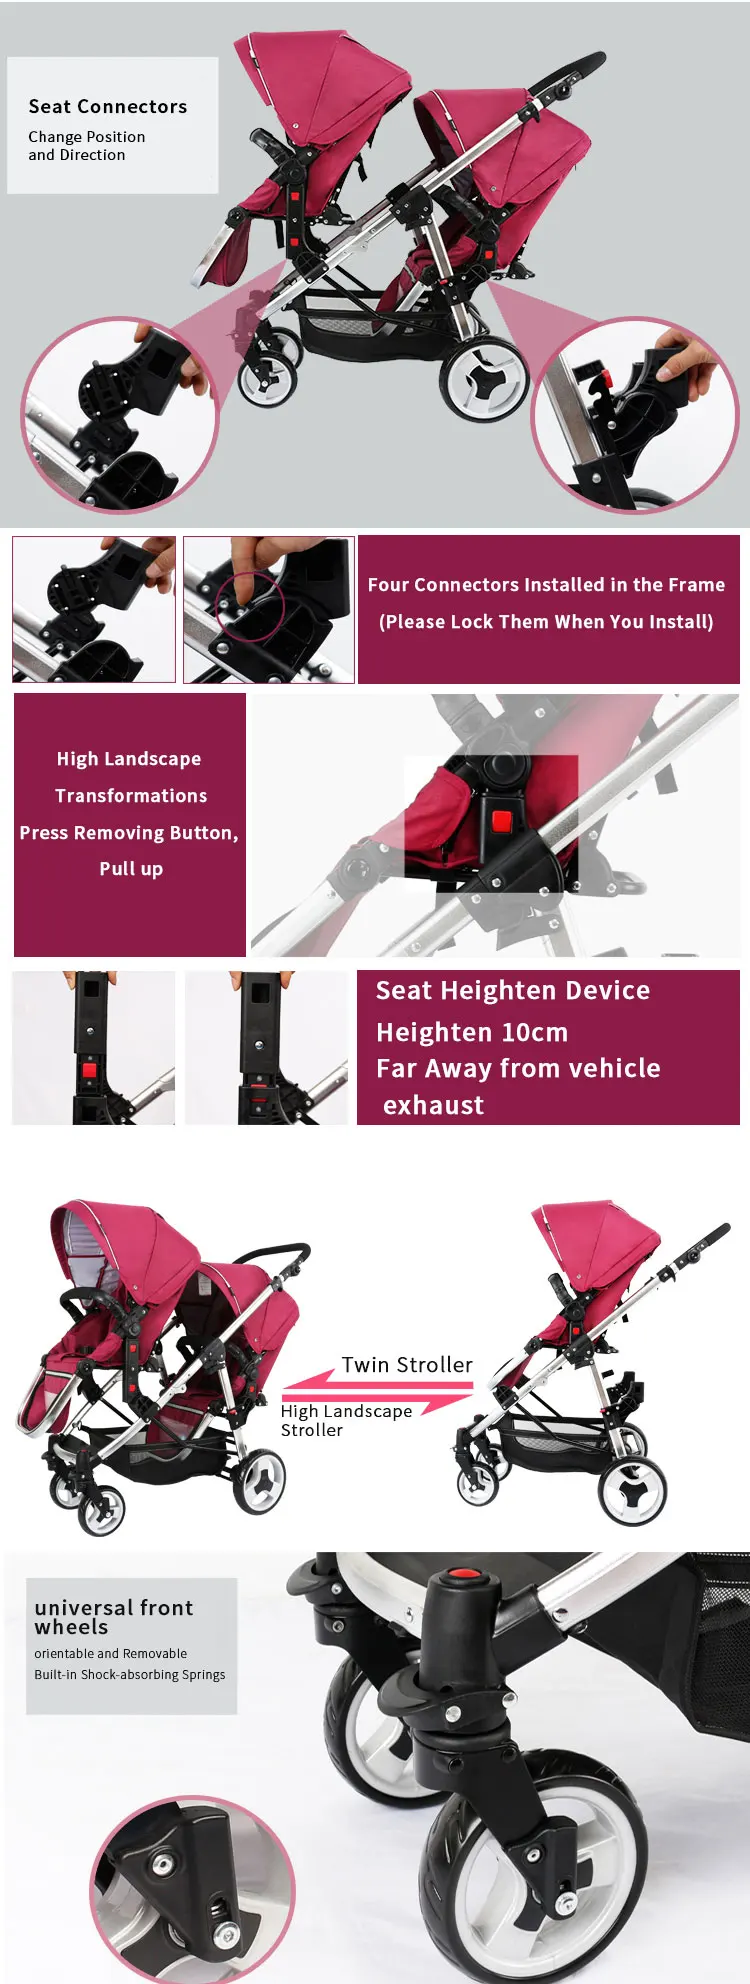 Высококлассная зимняя детская коляска для Близнецов с высоким ландшафтом и амортизаторами, вторая детская двойная коляска может сидеть до и после